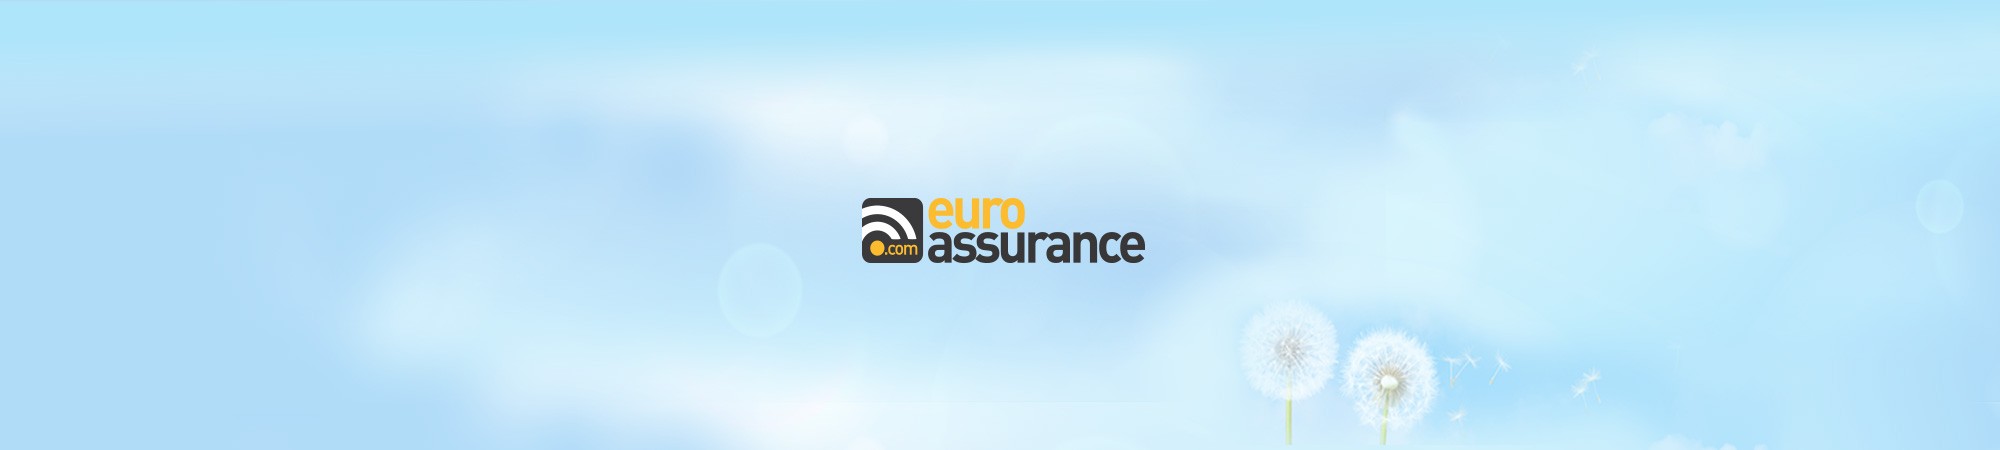  Refonte graphique du site Euro-Assurance